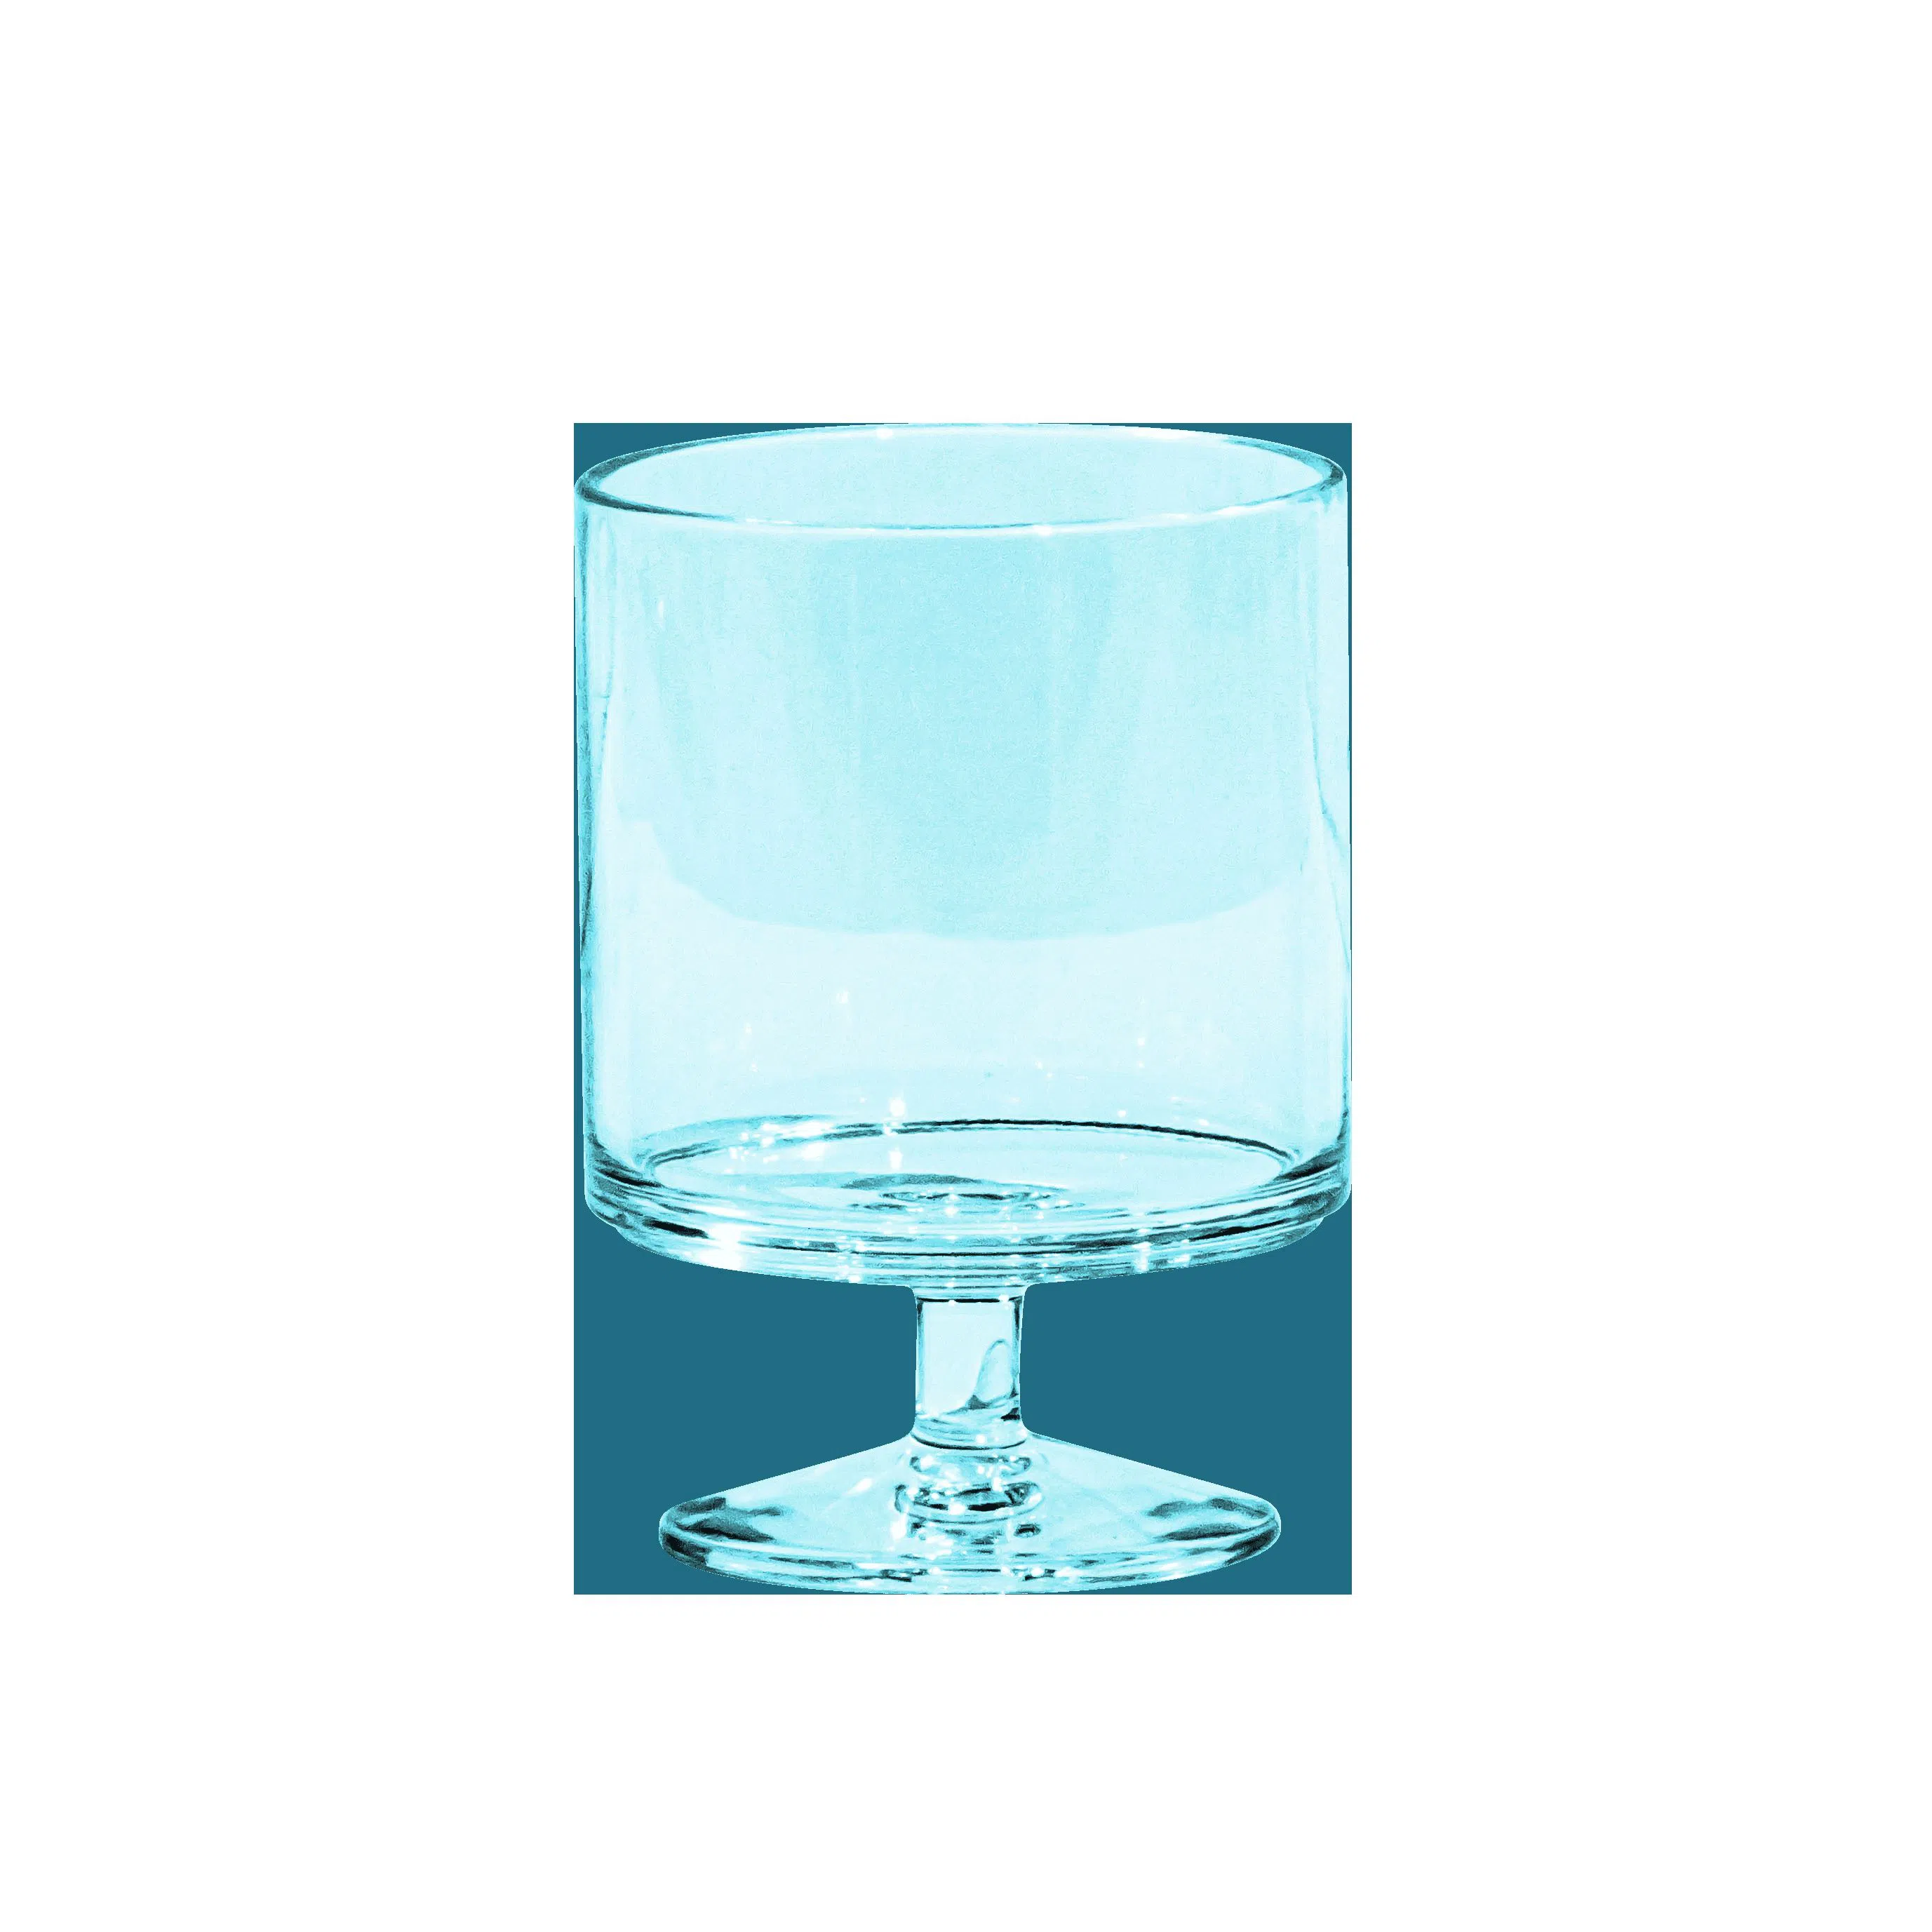 Le Cadeaux Shatter-Resistant Fleur Wine Glasses in Blue, Set of 6